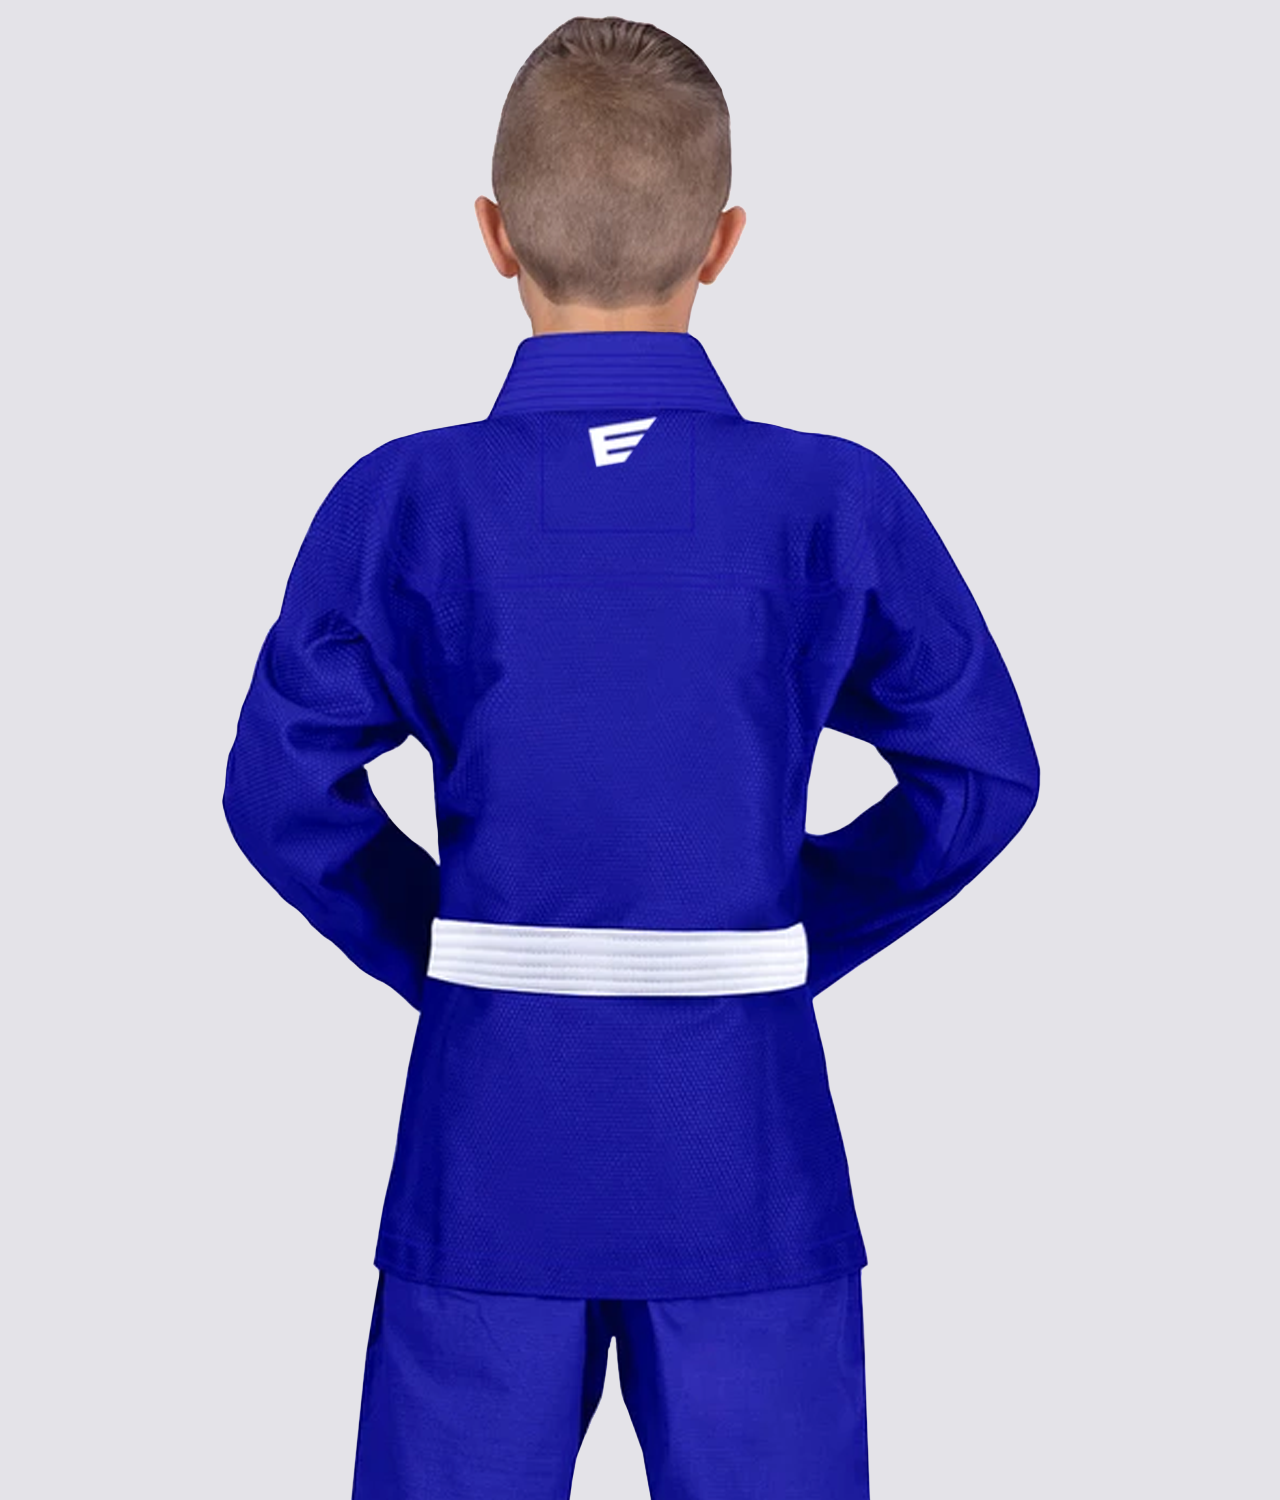 Elite Sports Plain Blue Compression Judo Spat Pants